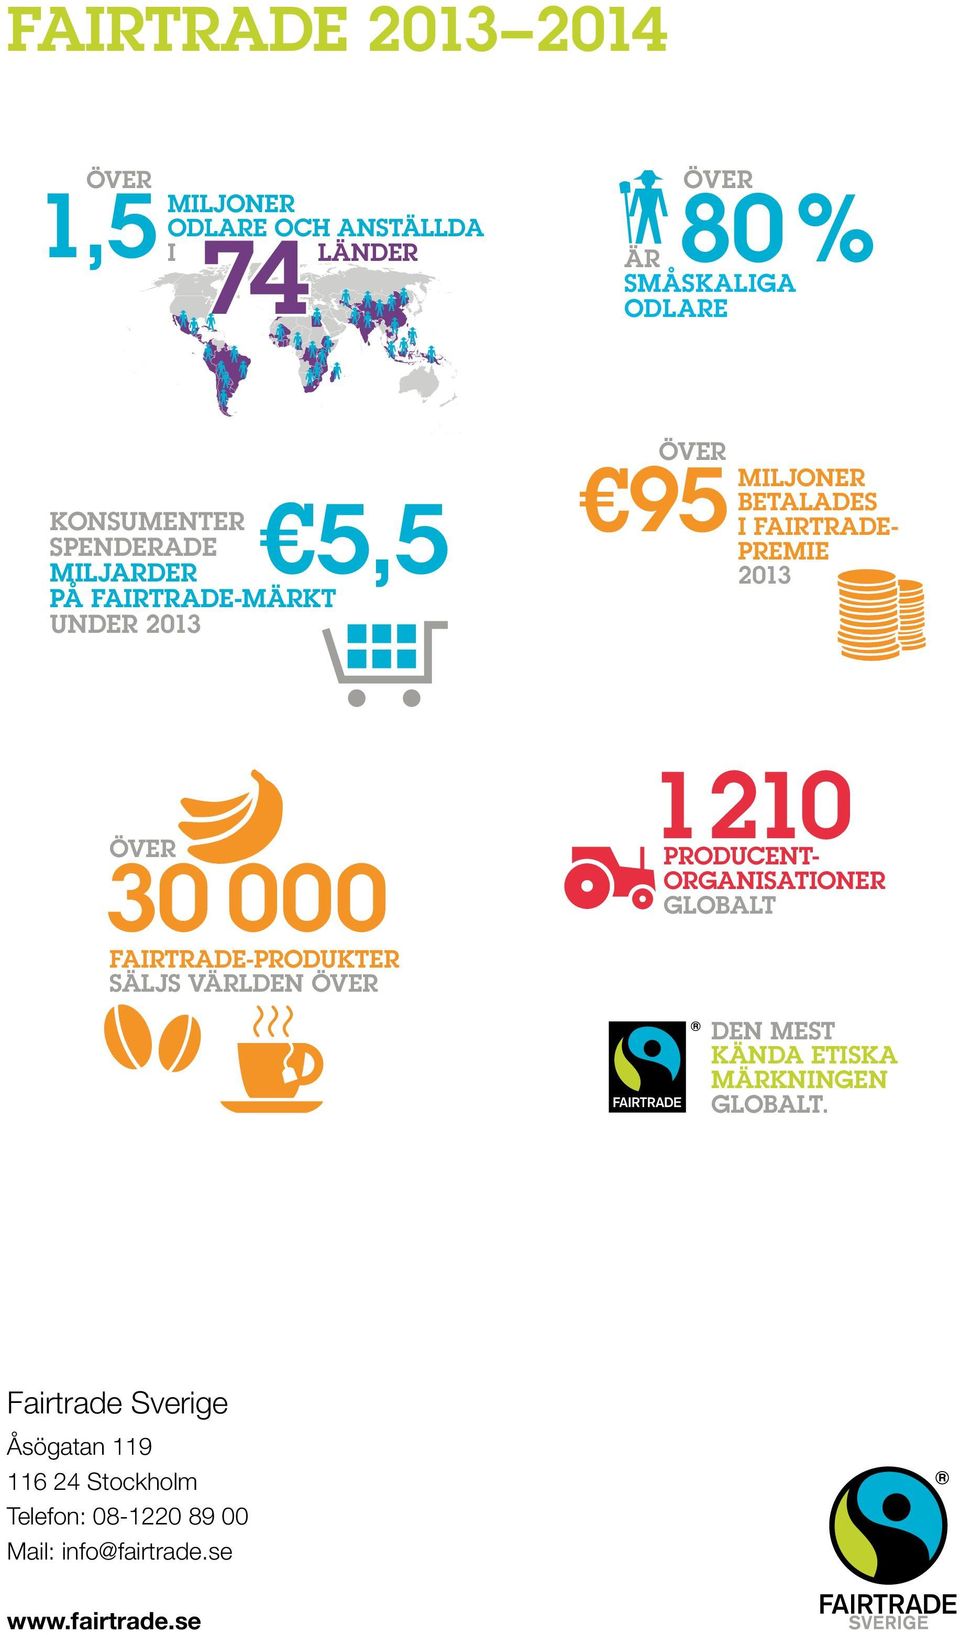 Fairtradepremie 2013 1 210 producentorganisationer globalt Fairtrade-produkter säljs världen över den mest kända